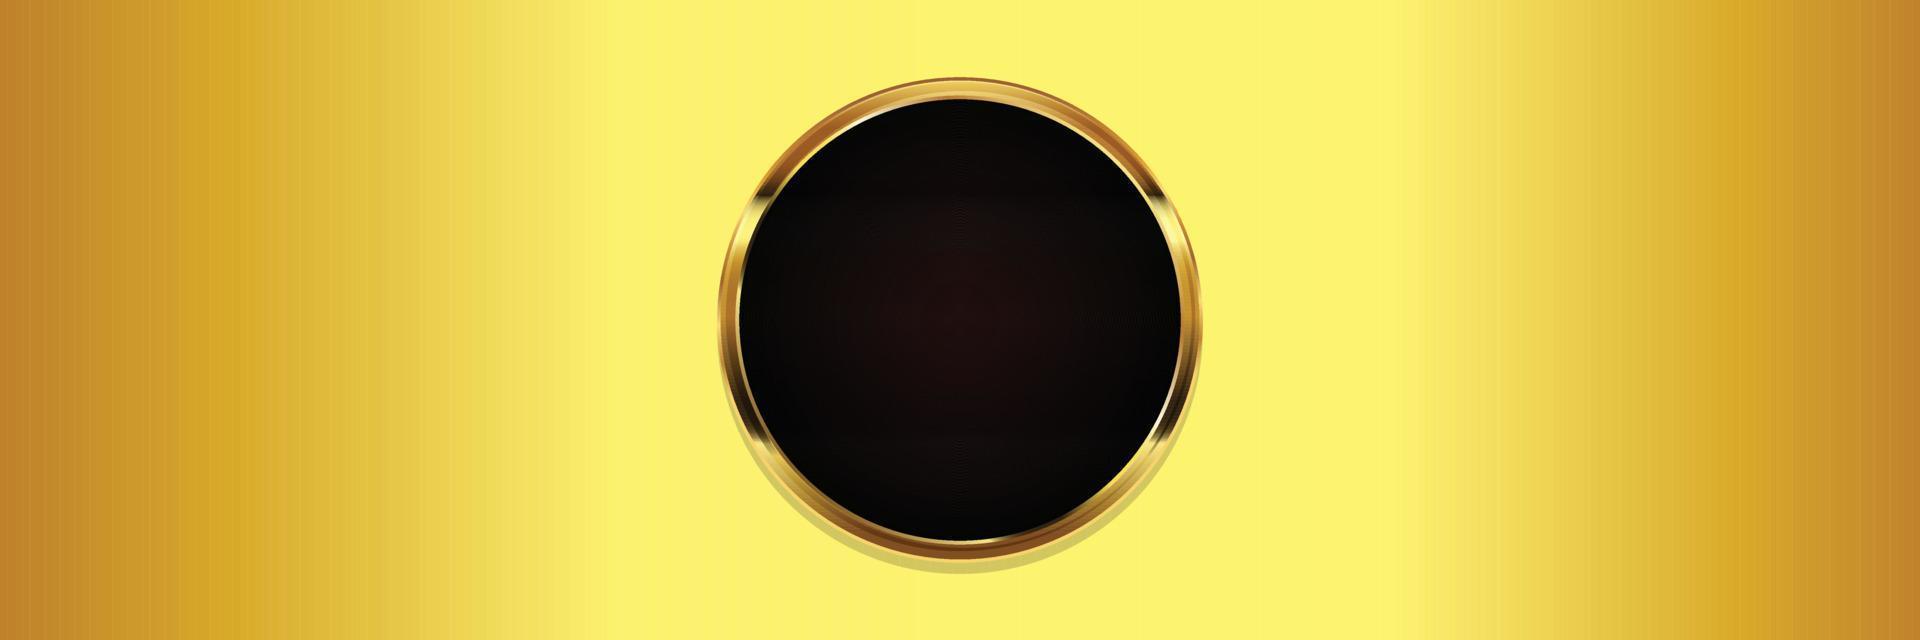 fundo dourado no quadro de círculo preto para design de textura. ilustração vetorial vetor